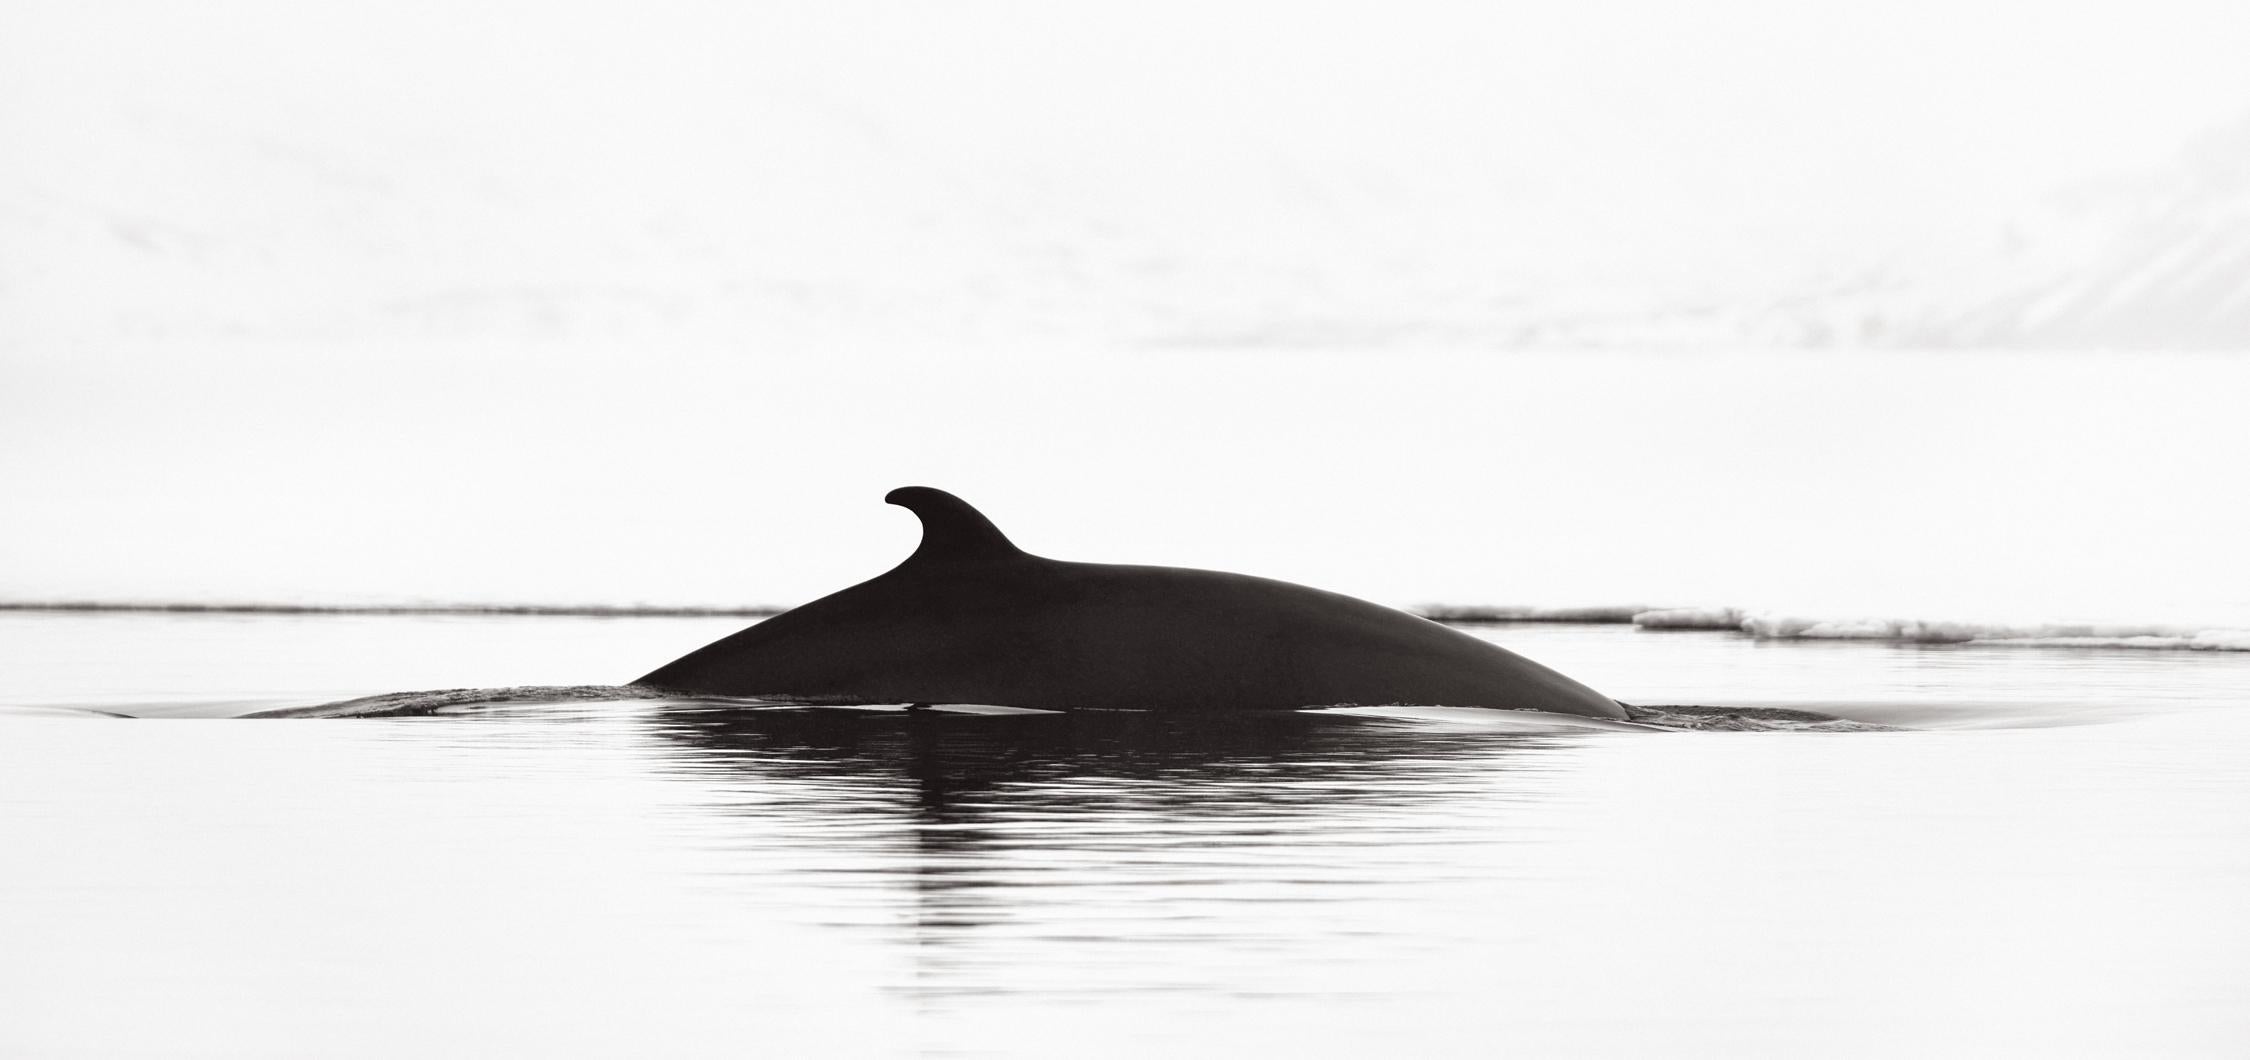 Black and White Photograph Drew Doggett - Photographie surréaliste et abstraite en noir et blanc d'une baleine faisant surface